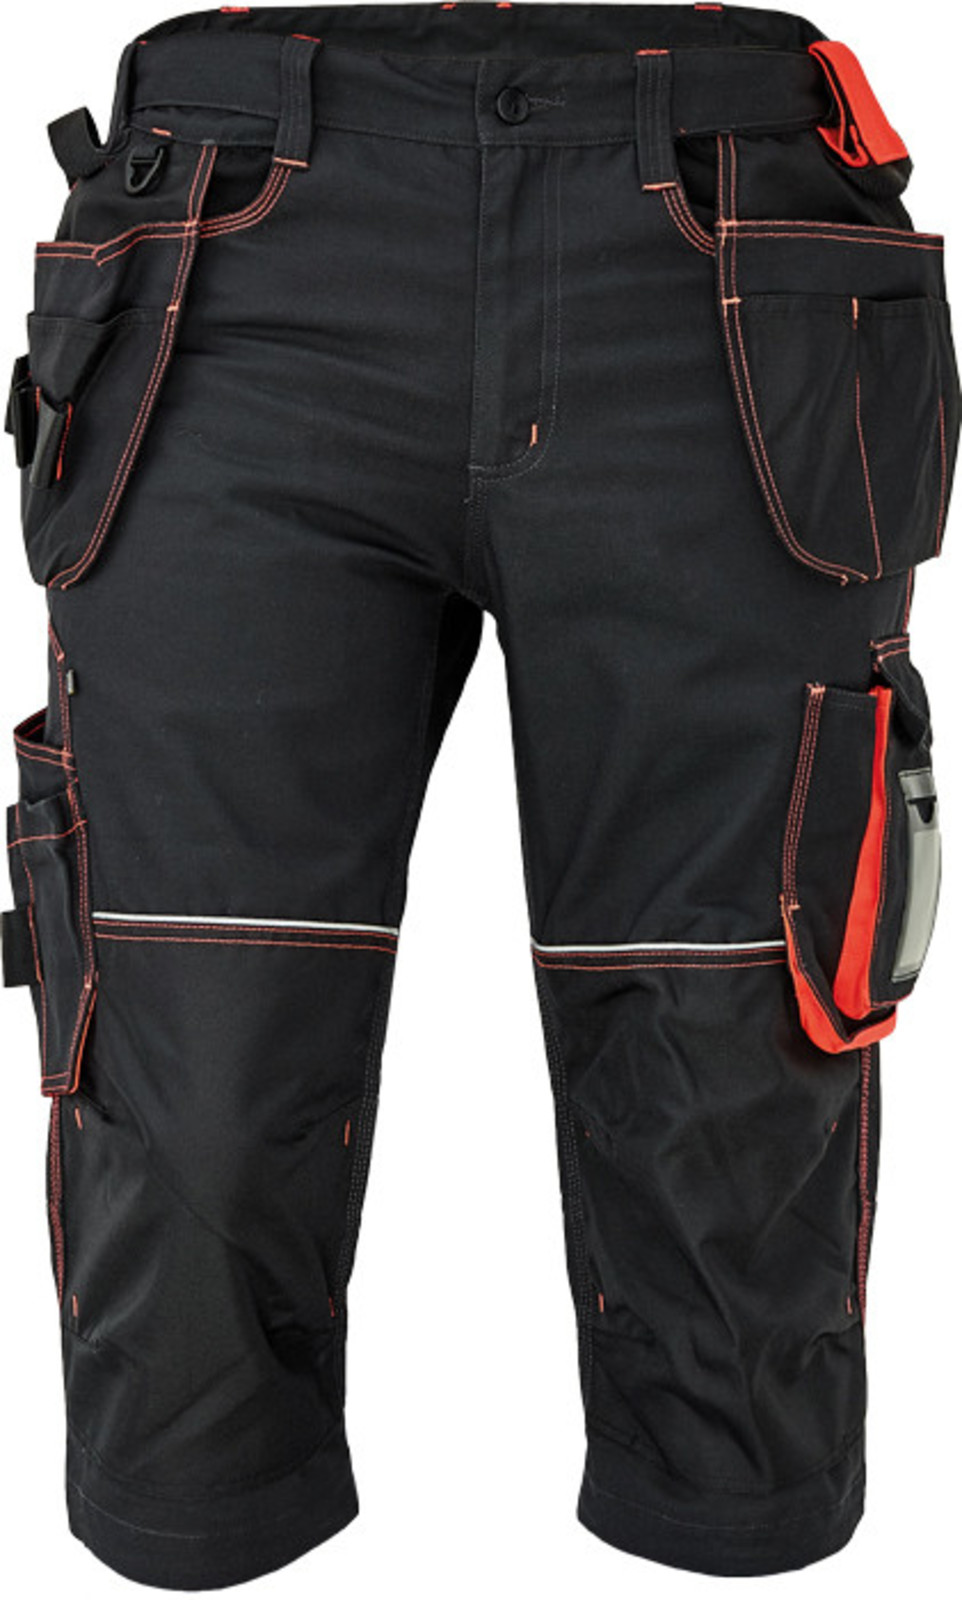 Pánske pracovné 3/4 nohavice Cerva Knoxfield 320 - veľkosť: 62, farba: antracit/červená